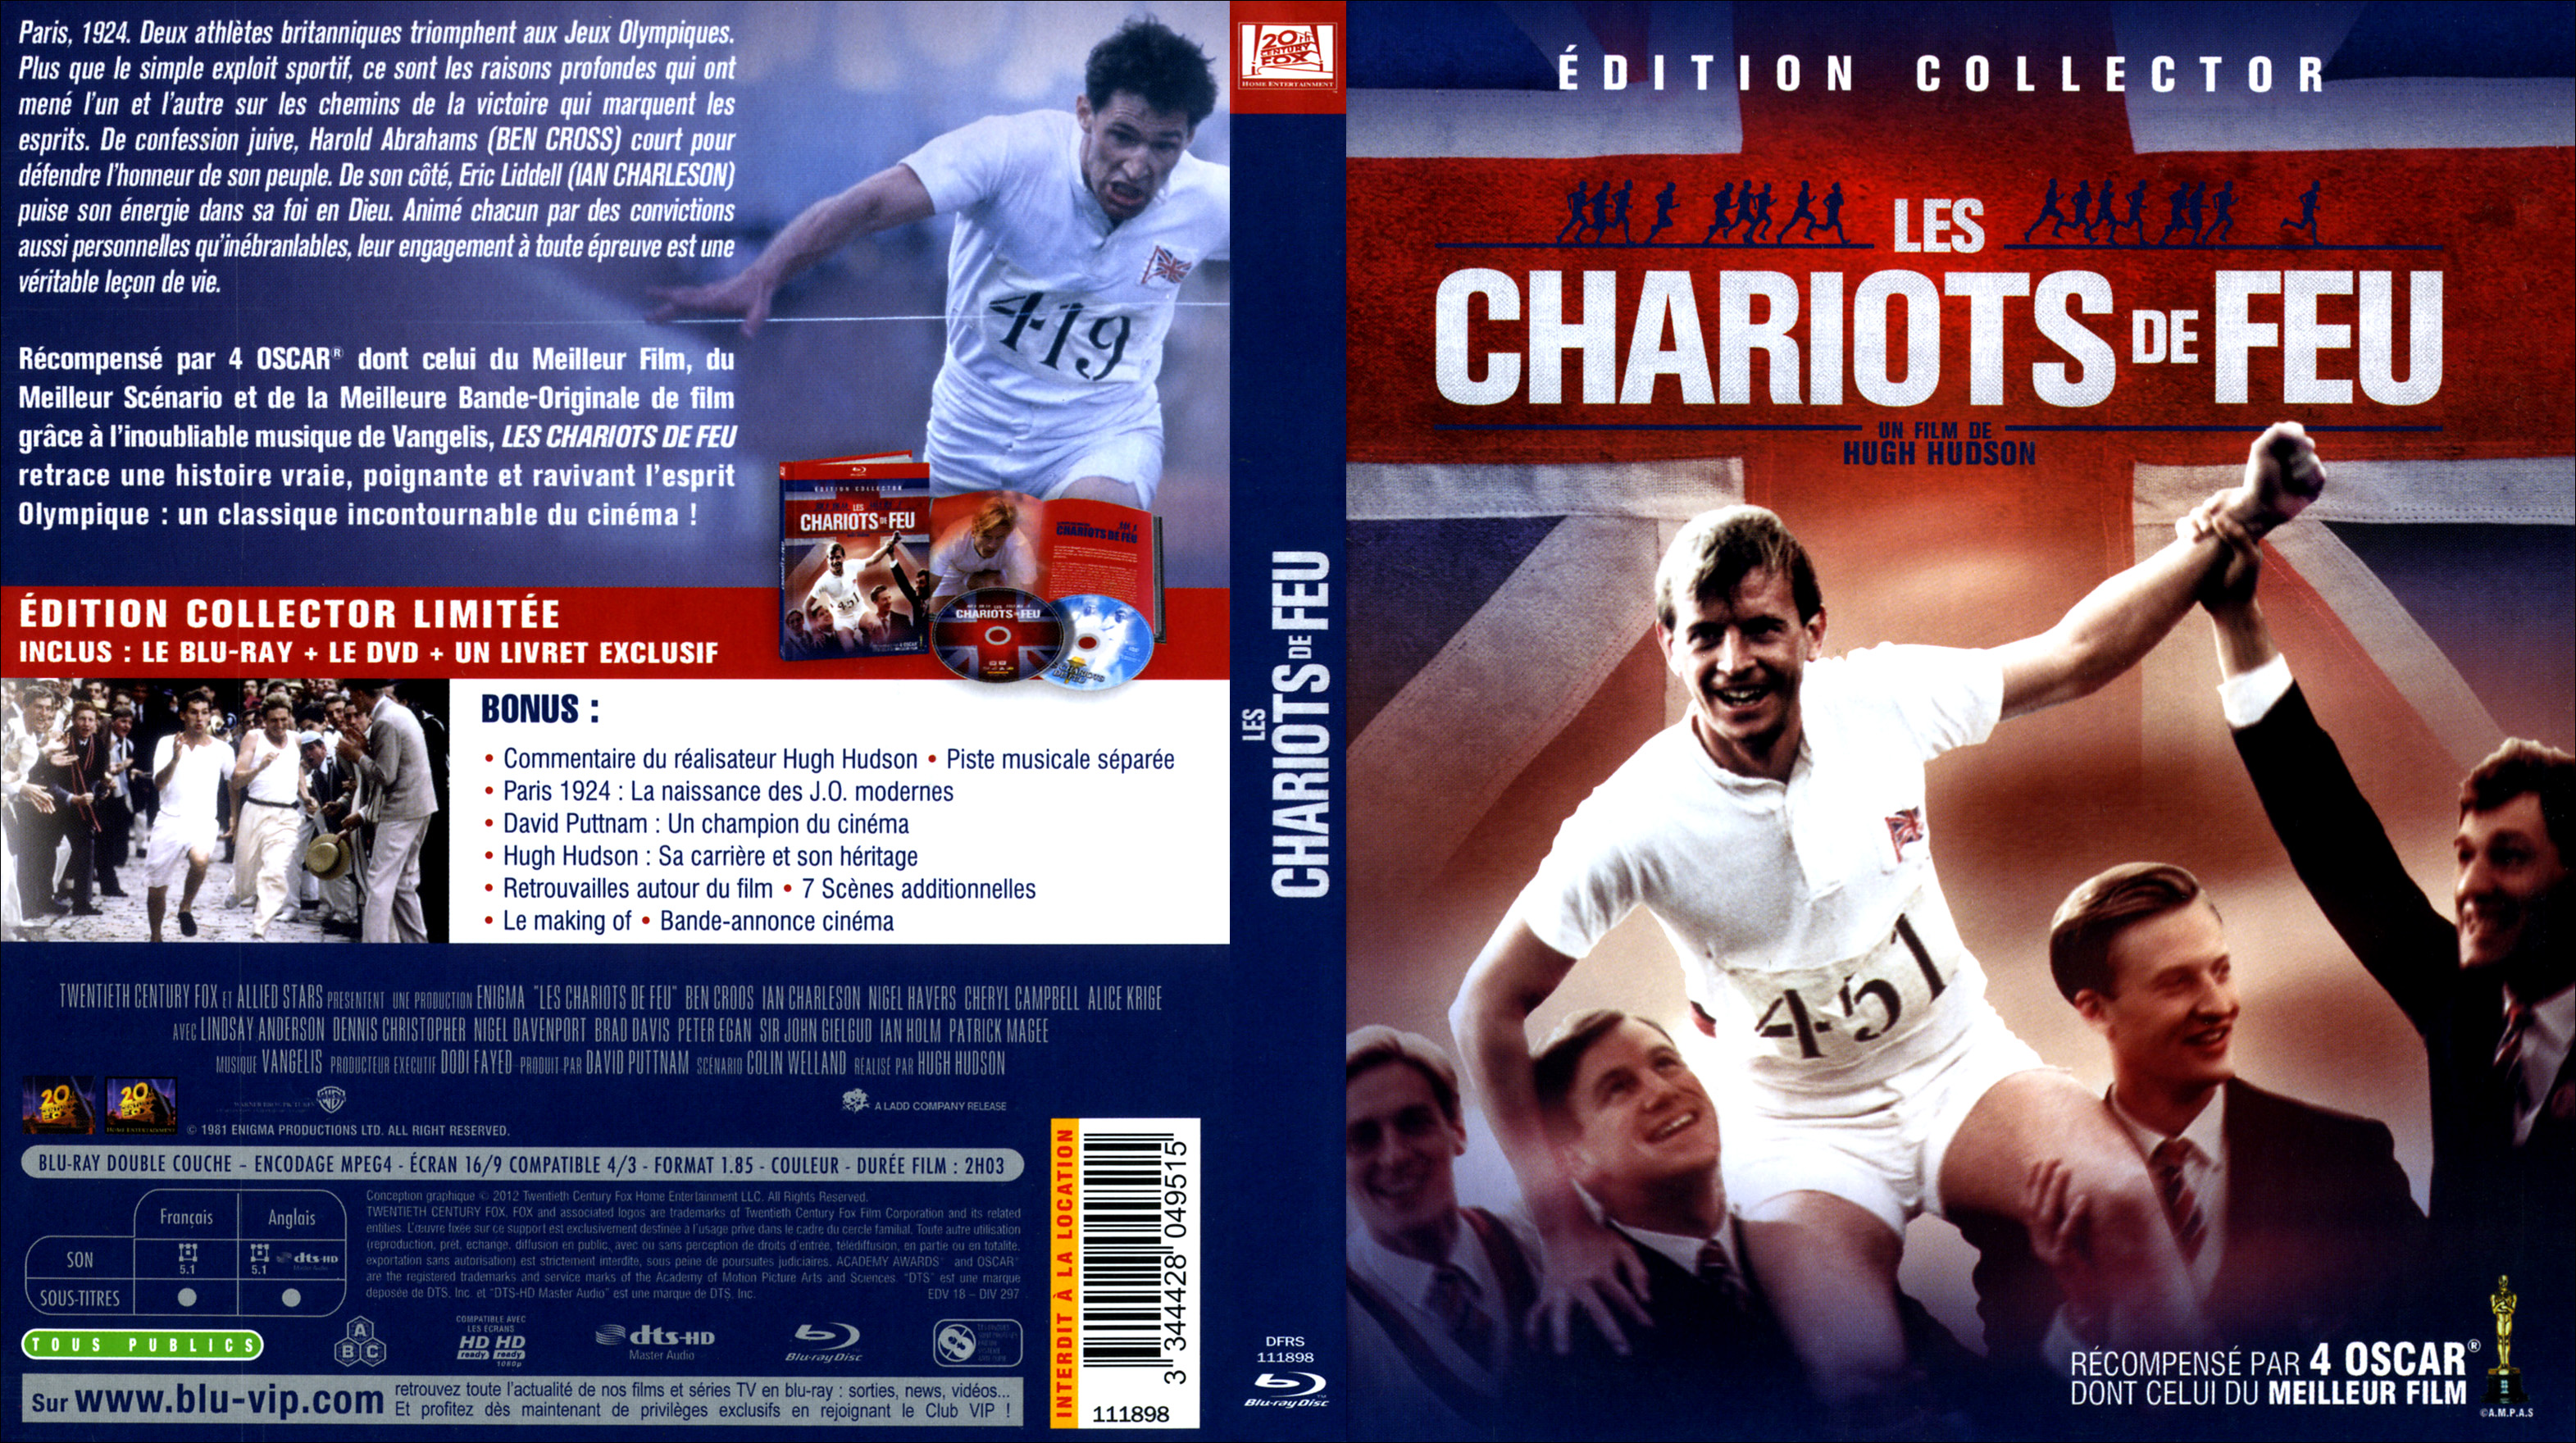 Jaquette DVD Les chariots de feu (BLU-RAY) v2